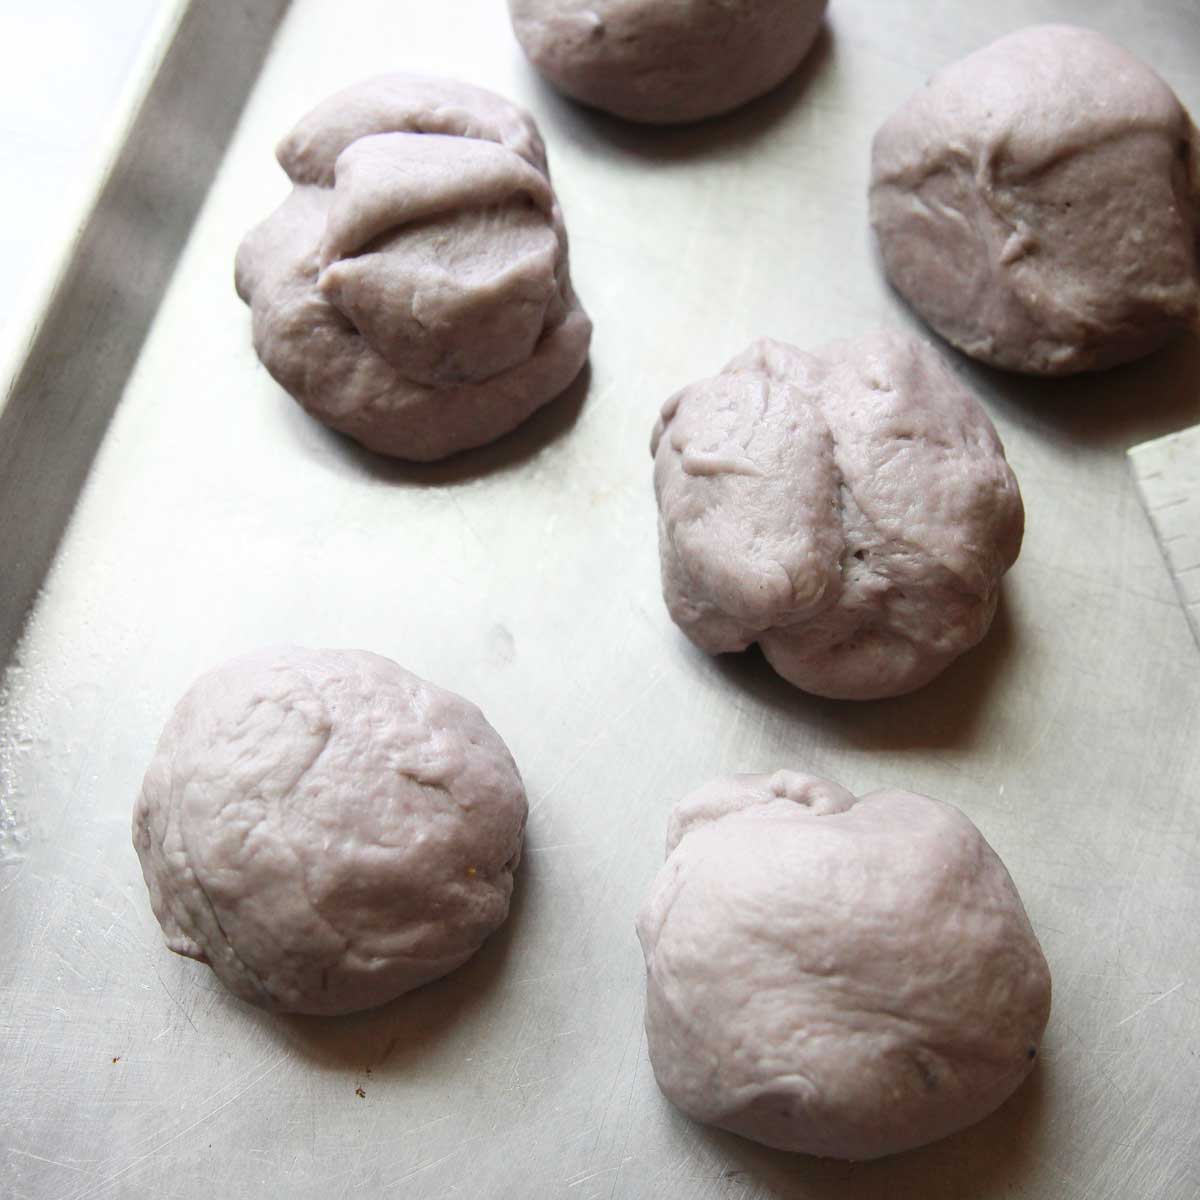 How to Make Purple Sweet Potato Steamed Buns (Healthy Vegan Recipe!) - Purple Sweet Potato Steamed Buns